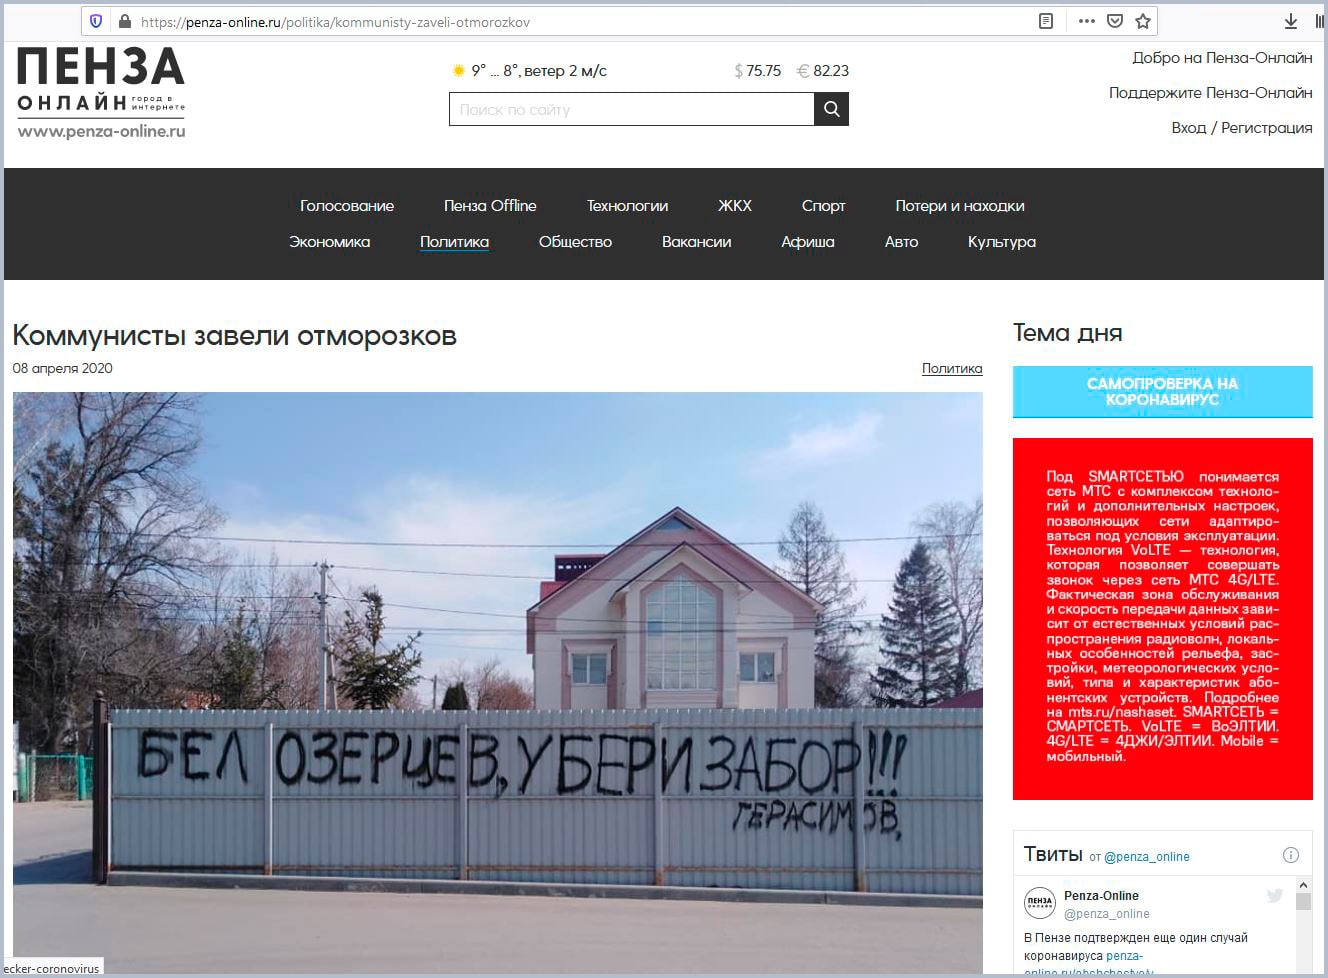 Незаконно возведенный забор губернатора Белозерцева стал предметом обсуждения